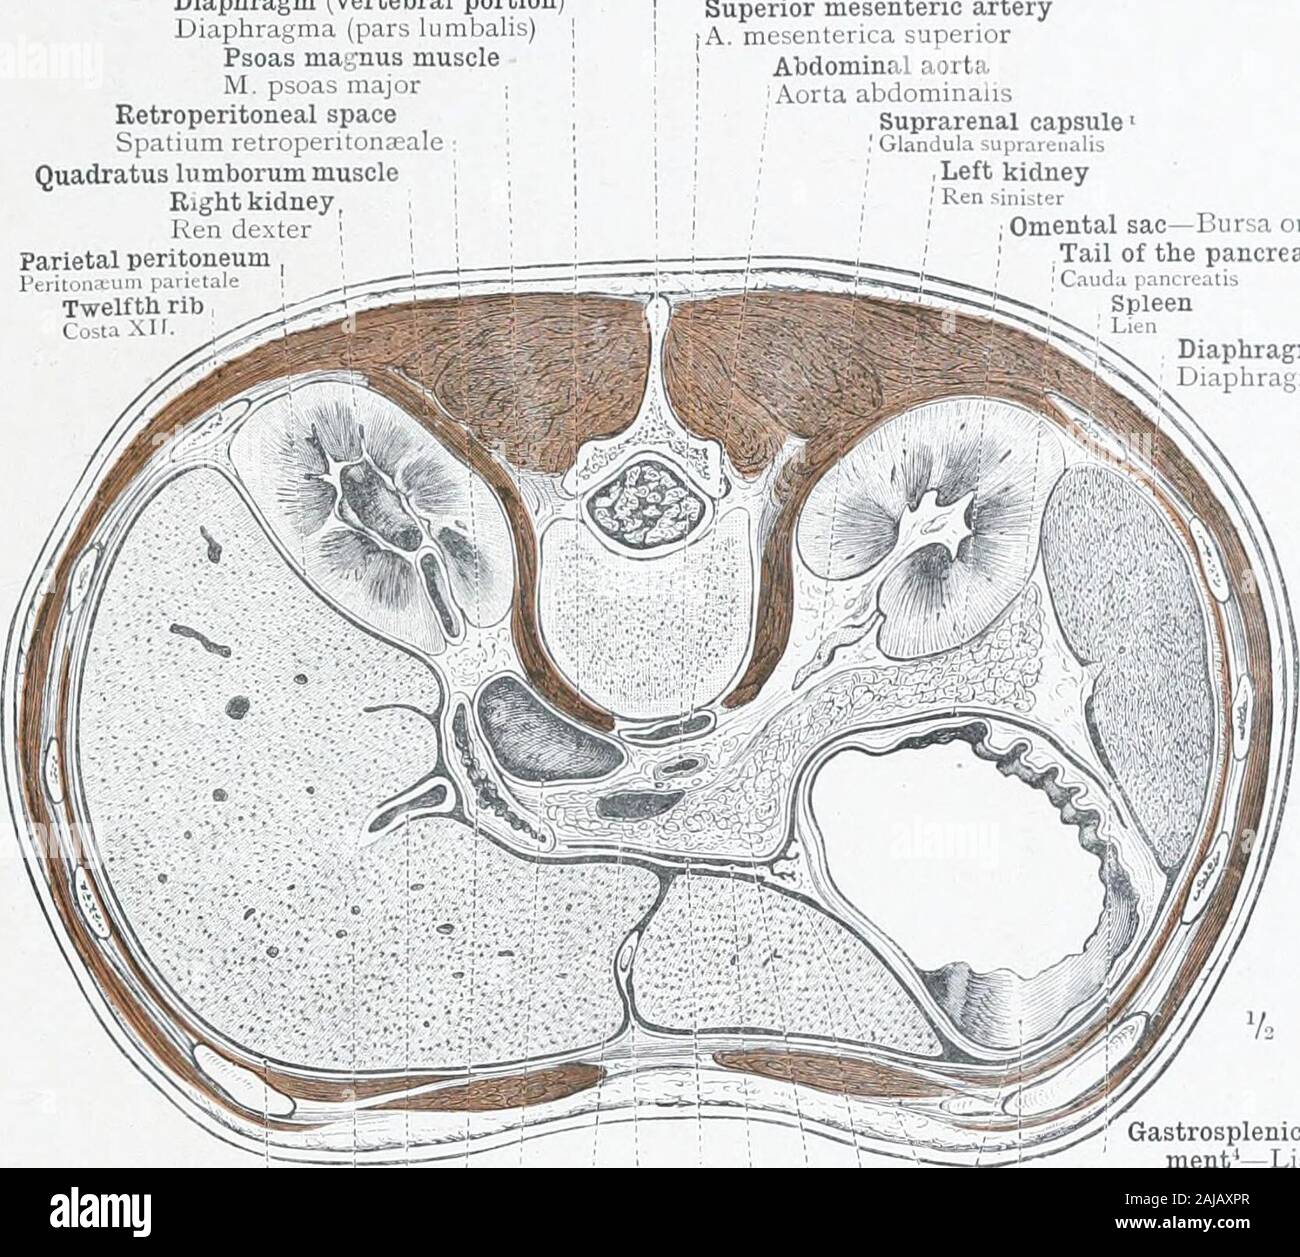 Un atlas de anatomía humana para estudiantes y médicos . Esófago. Musculus Suspensorius Duodeni suspensivo, el músculo del duodeno. En la fosa iliaca izquierda el peritoneo parietal izquierdo ha sido conectado, a fin de mostrar la *iliaco-subfascial de fosa del peritoneo, que existe en este modelo. (Comparar con este figureFig. 809, pág. 479.) espacio retroperitoneal y anatomía topográfica del riñón. Órganos urinarios 495 Diafragma (Porción) vertebral (pars lumbalis diafragmática)maguus muscleM Psoas psoas. principales spaceSpatiam retroperitona retroperitoneal ;;ale : ;Quadratus lumborum musc Foto de stock